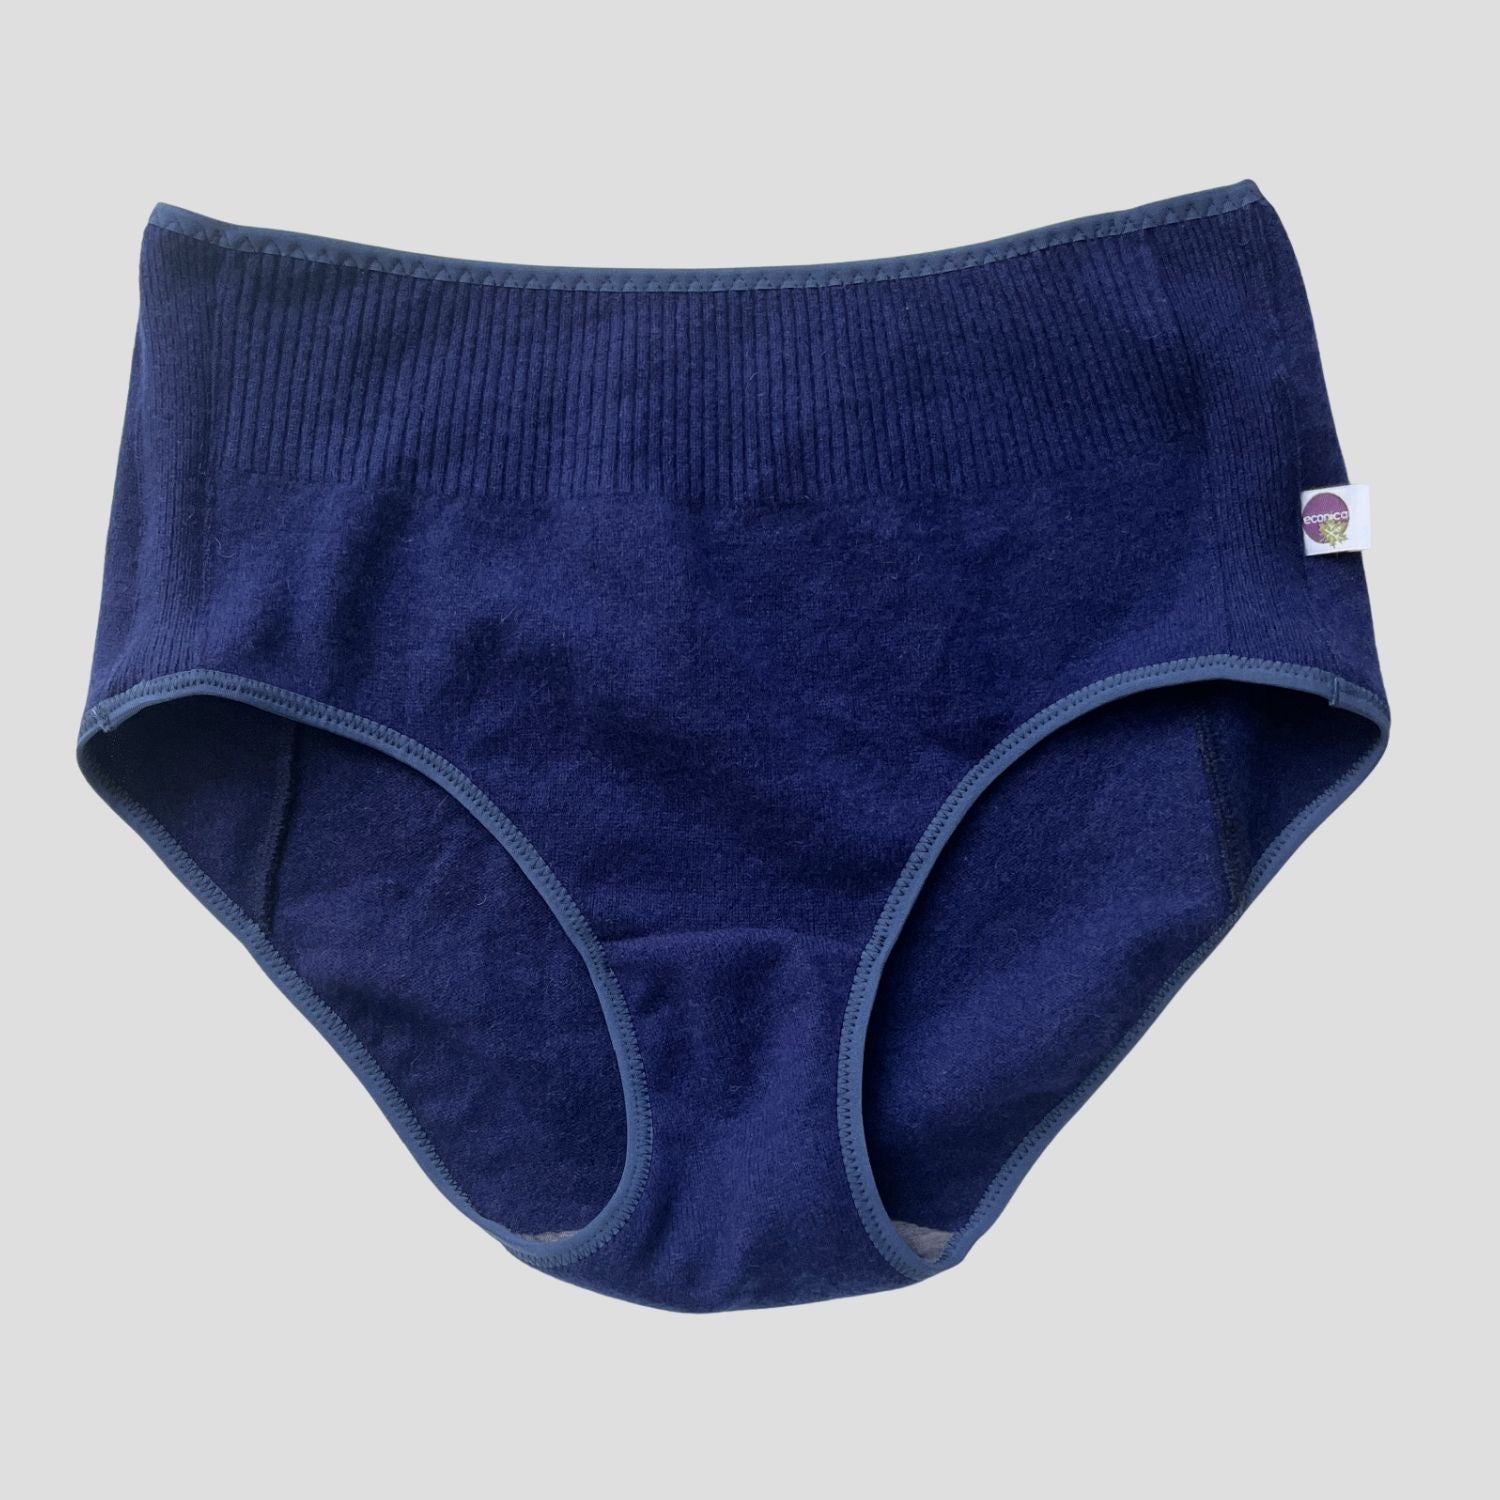 Merino wool women's underwear brief  Shop wool underwear + bra Canada –  econica